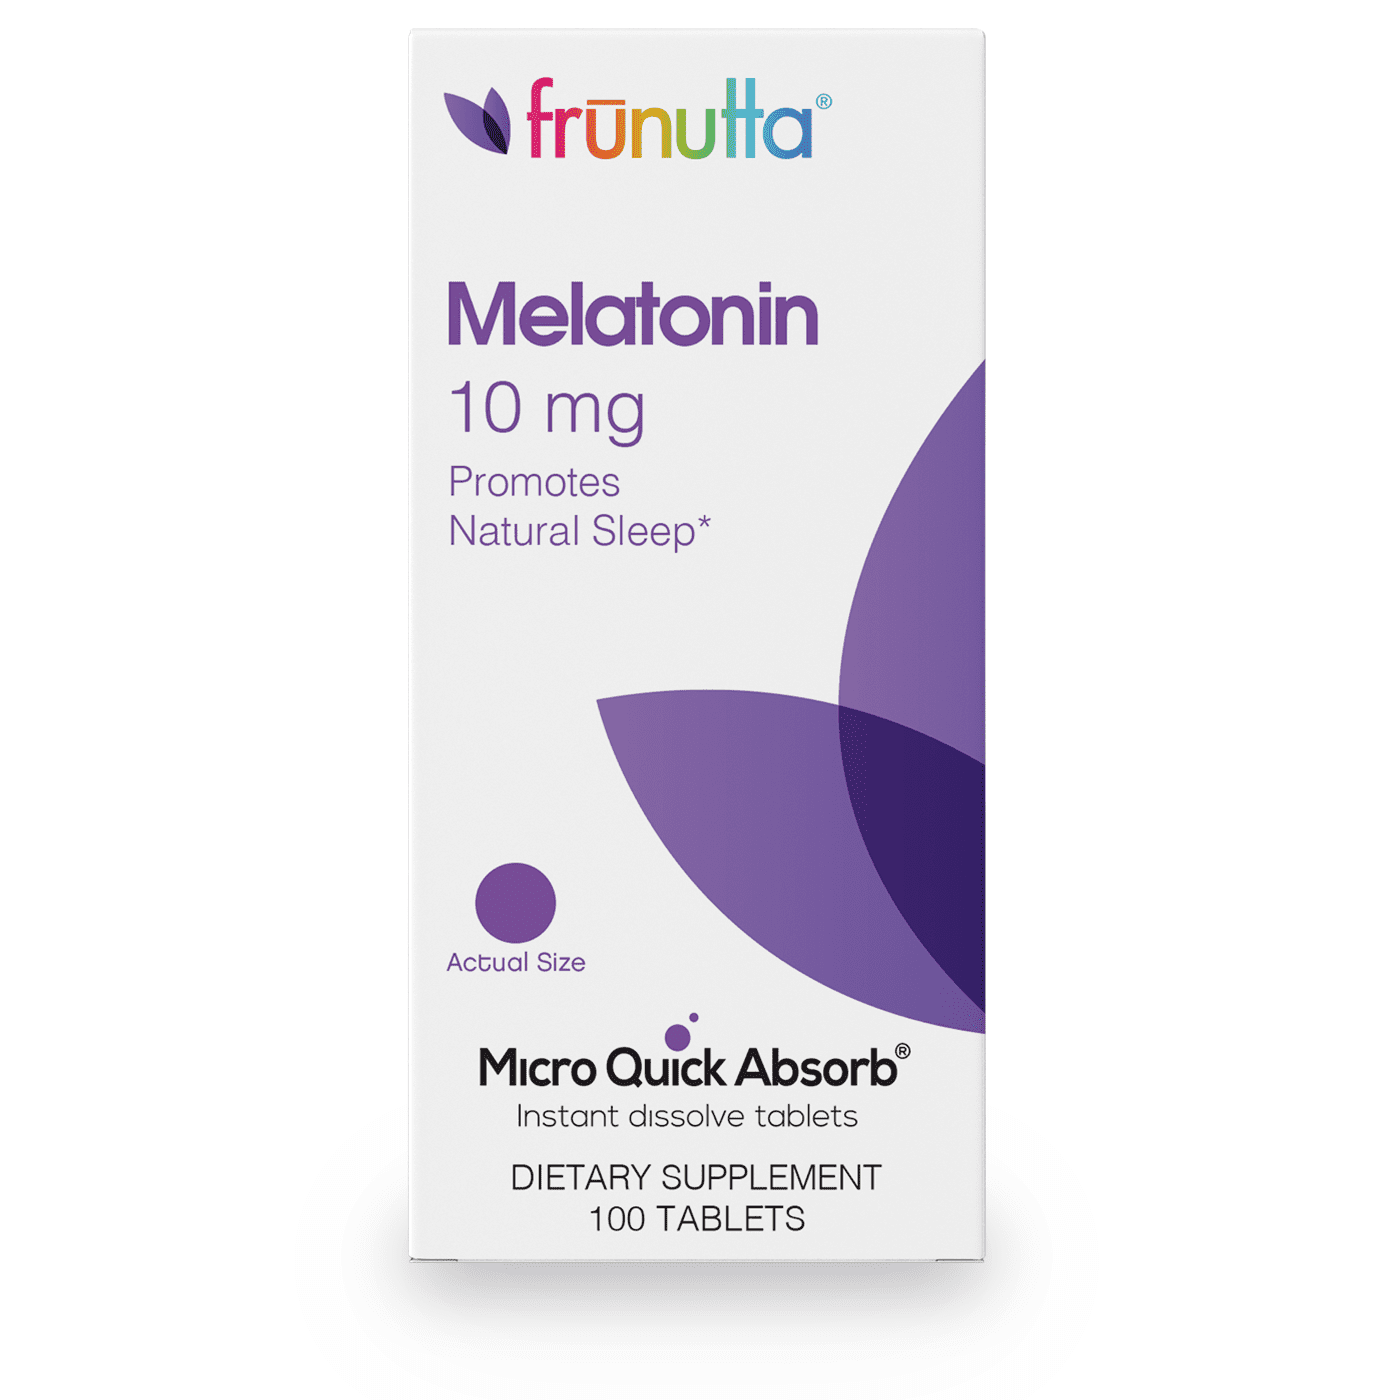 Frunutta Instant Dissolvable Melatonin Tablets, 10 mg, 100 Tablets, 3 Month Supply